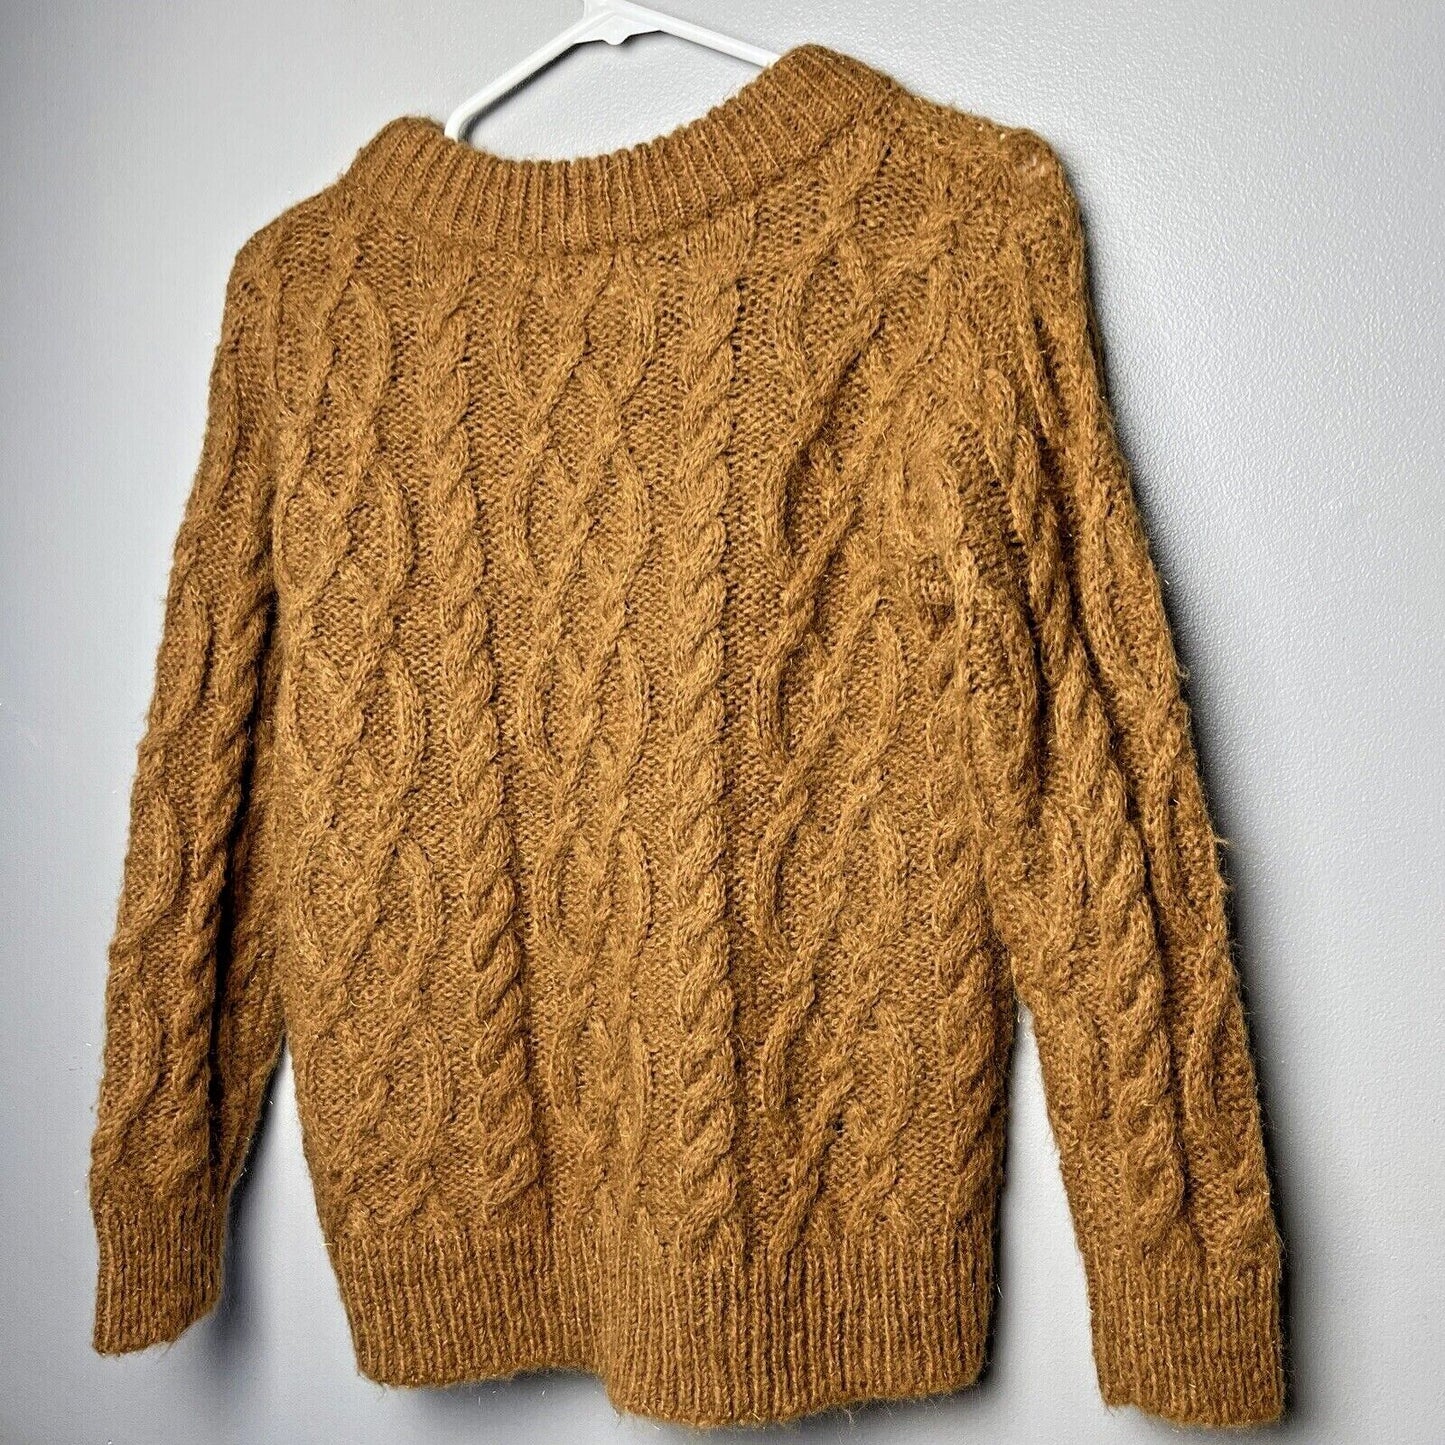 Treasure & Bond Women's Tan Dale Cable Knit Crew Neck Pullover Sweater, X-Small